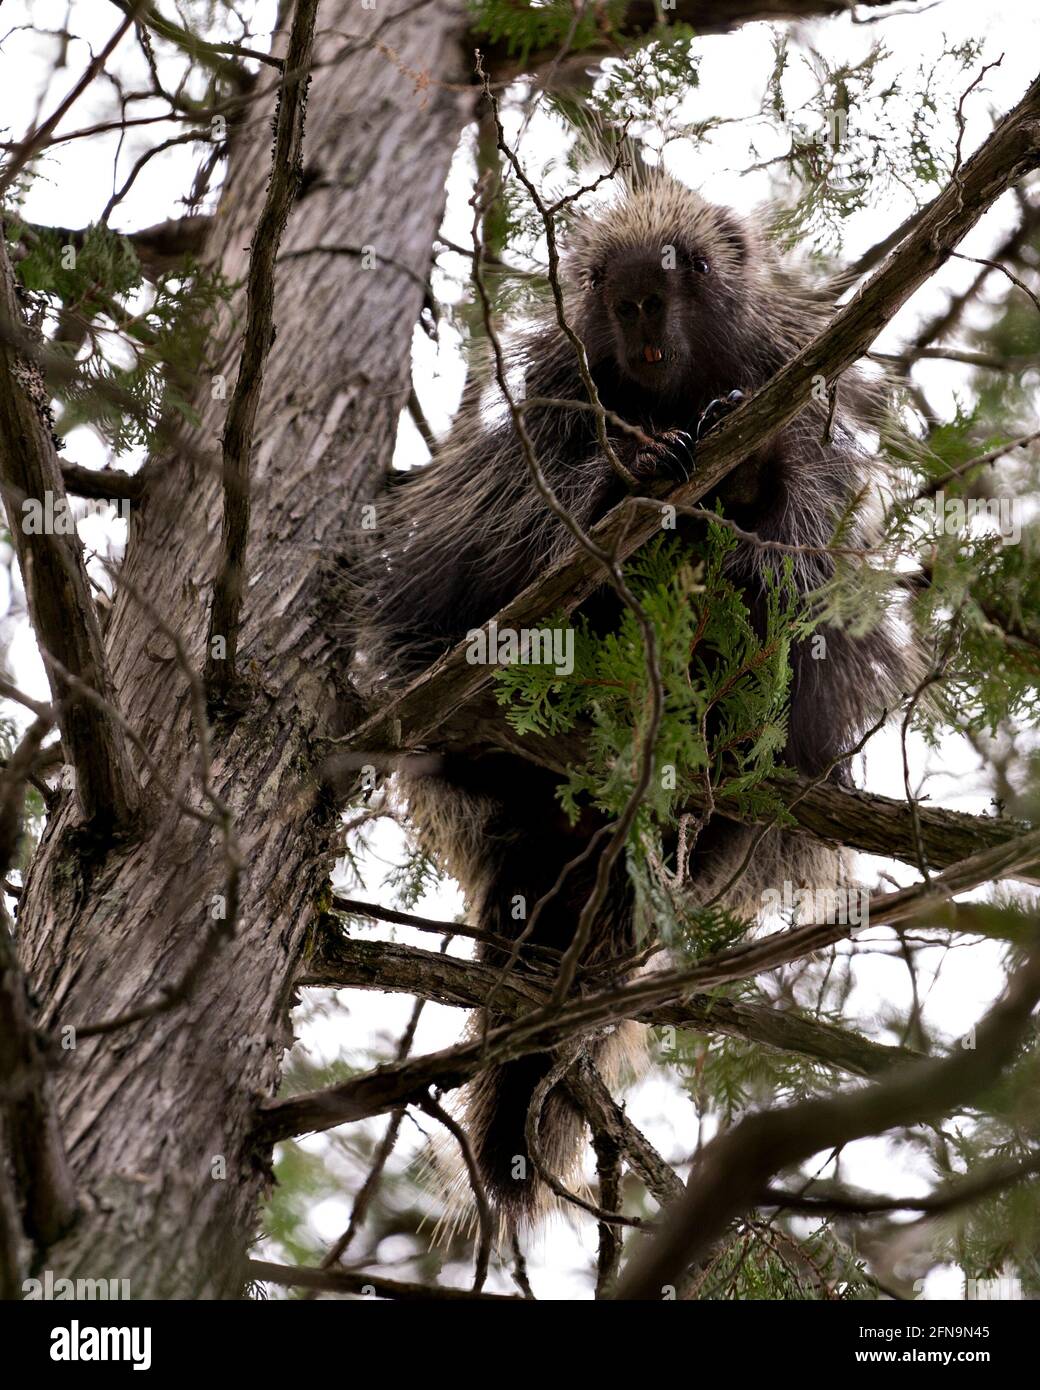 Animale porcupino nascosto in un albero, che mostra il suo corpo, la testa, lo stemma di spine affilate, quills, nella stagione primaverile con aghi di pino in primo piano e indietro Foto Stock